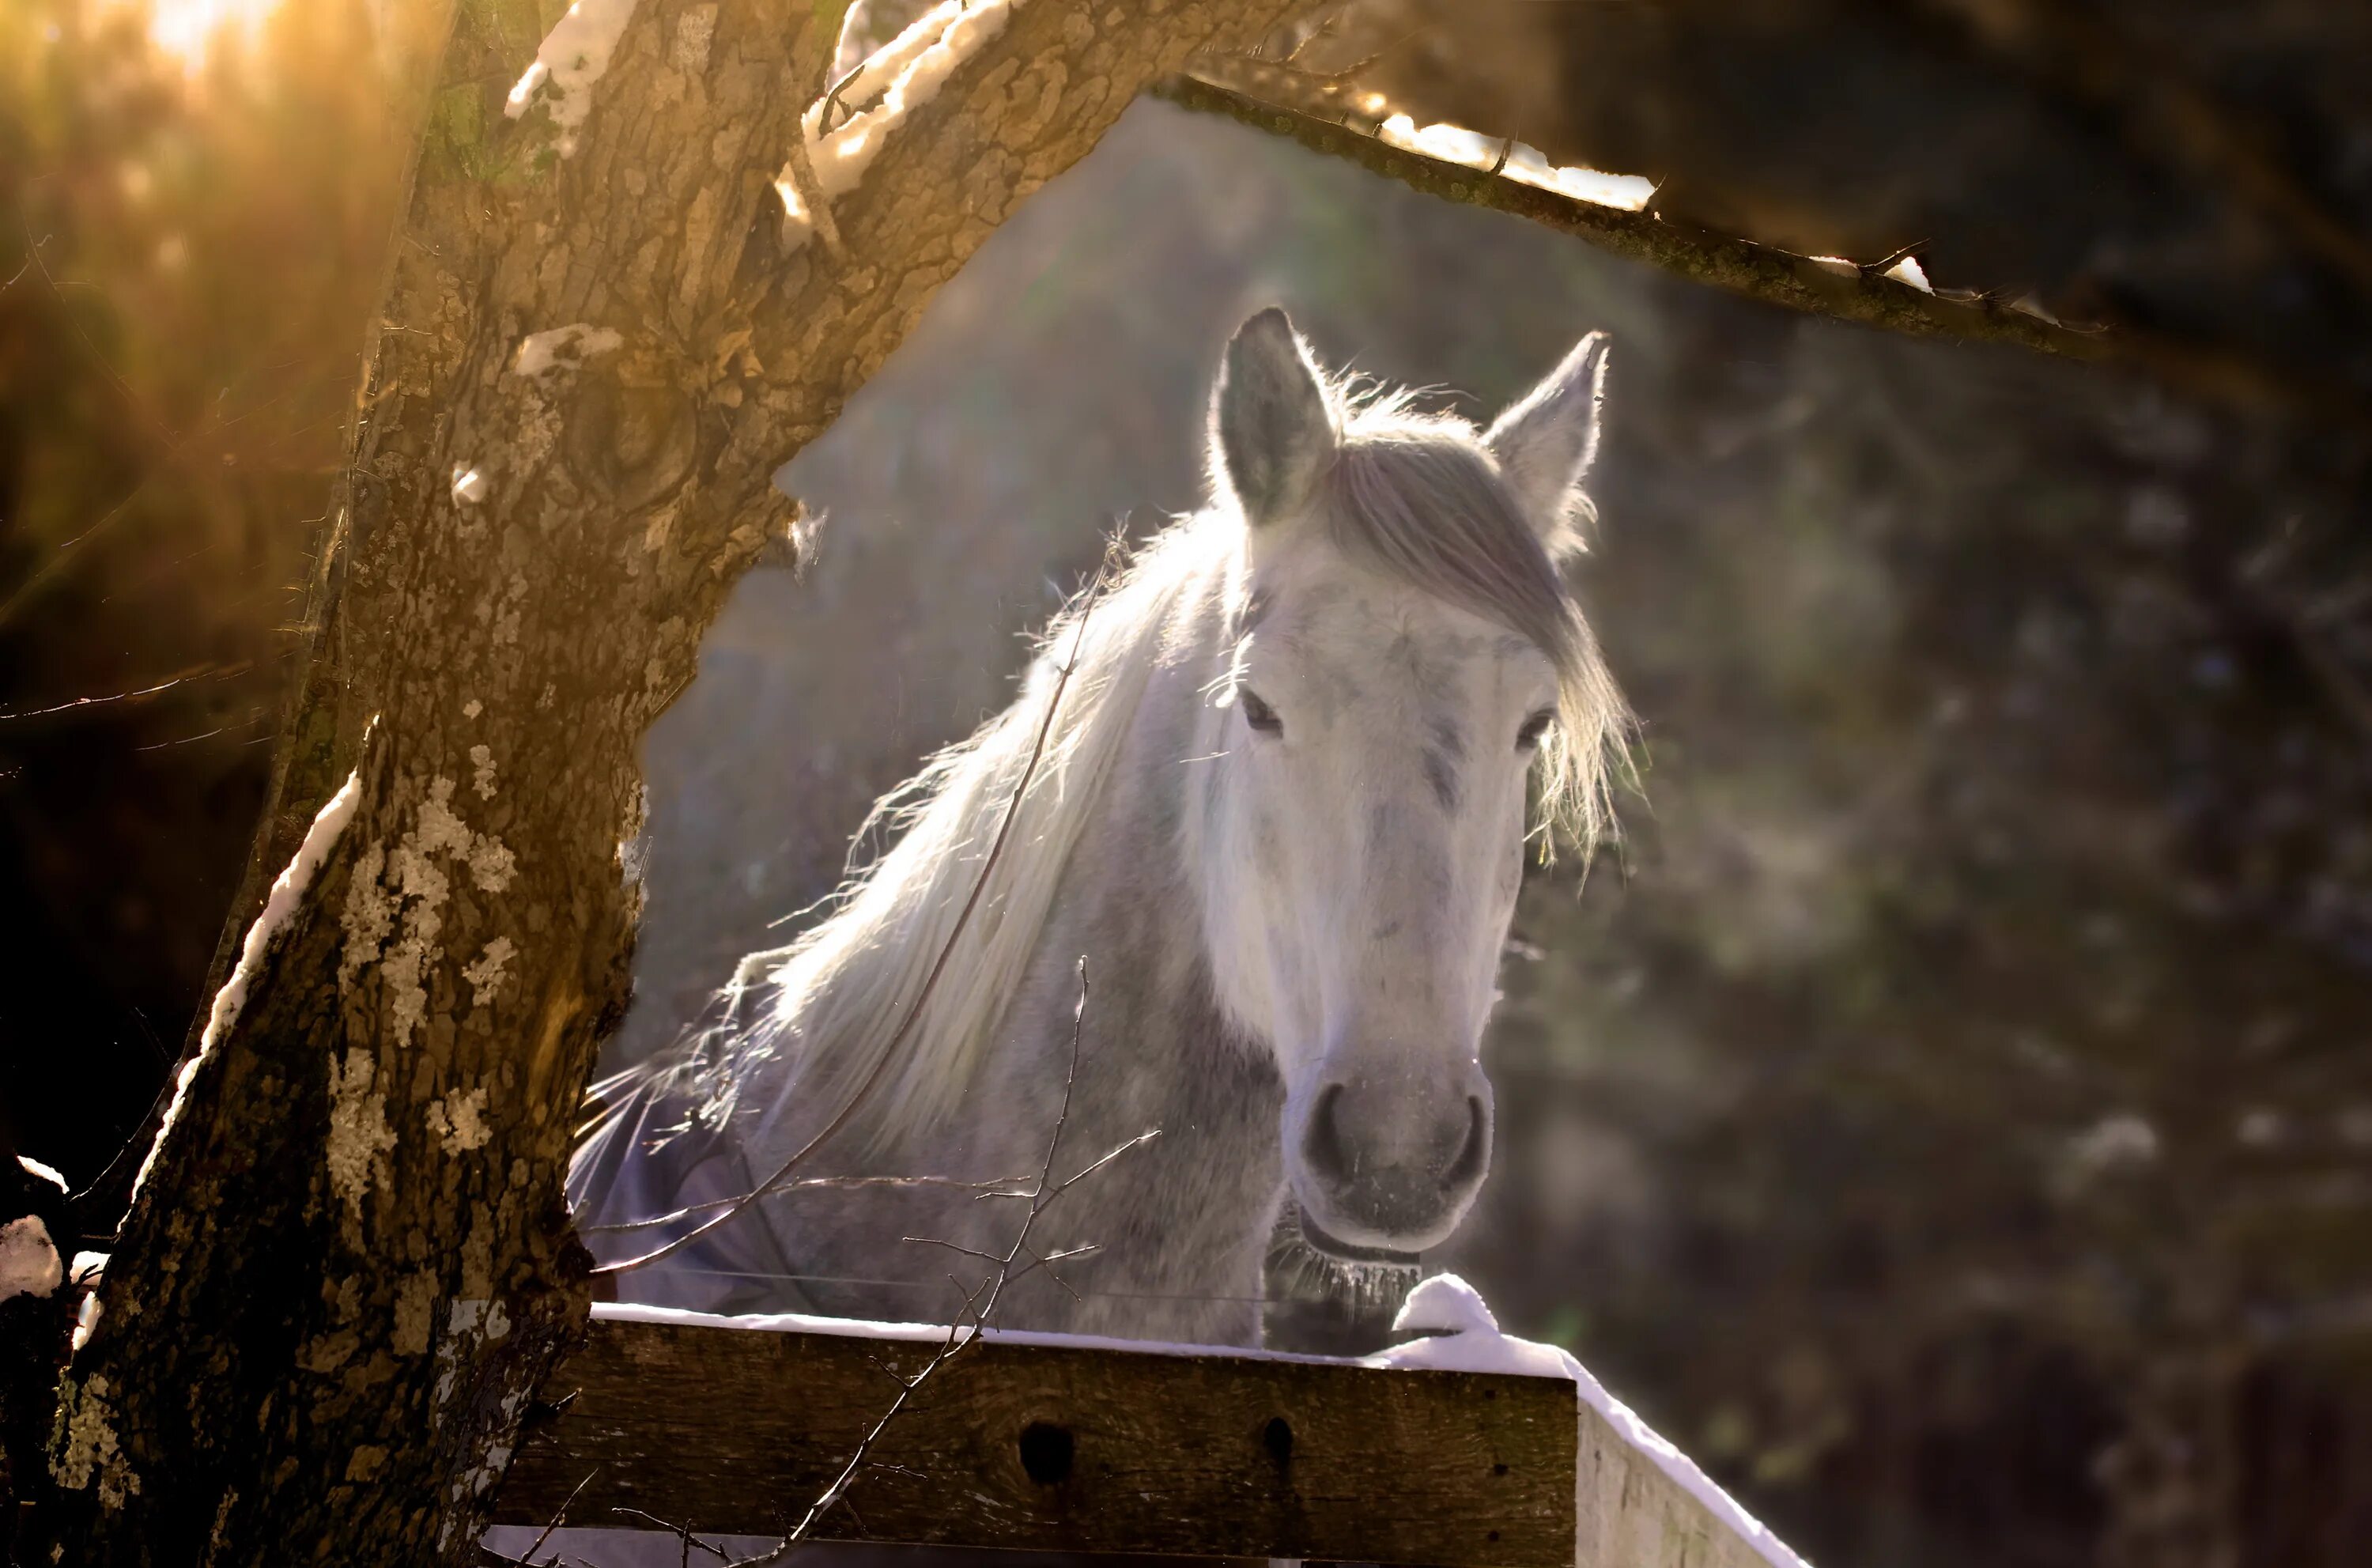 A horse is an animal. Красивая белая лошадь. Живые лошади. Кони на природе. Эстетика природы животных лошадей.